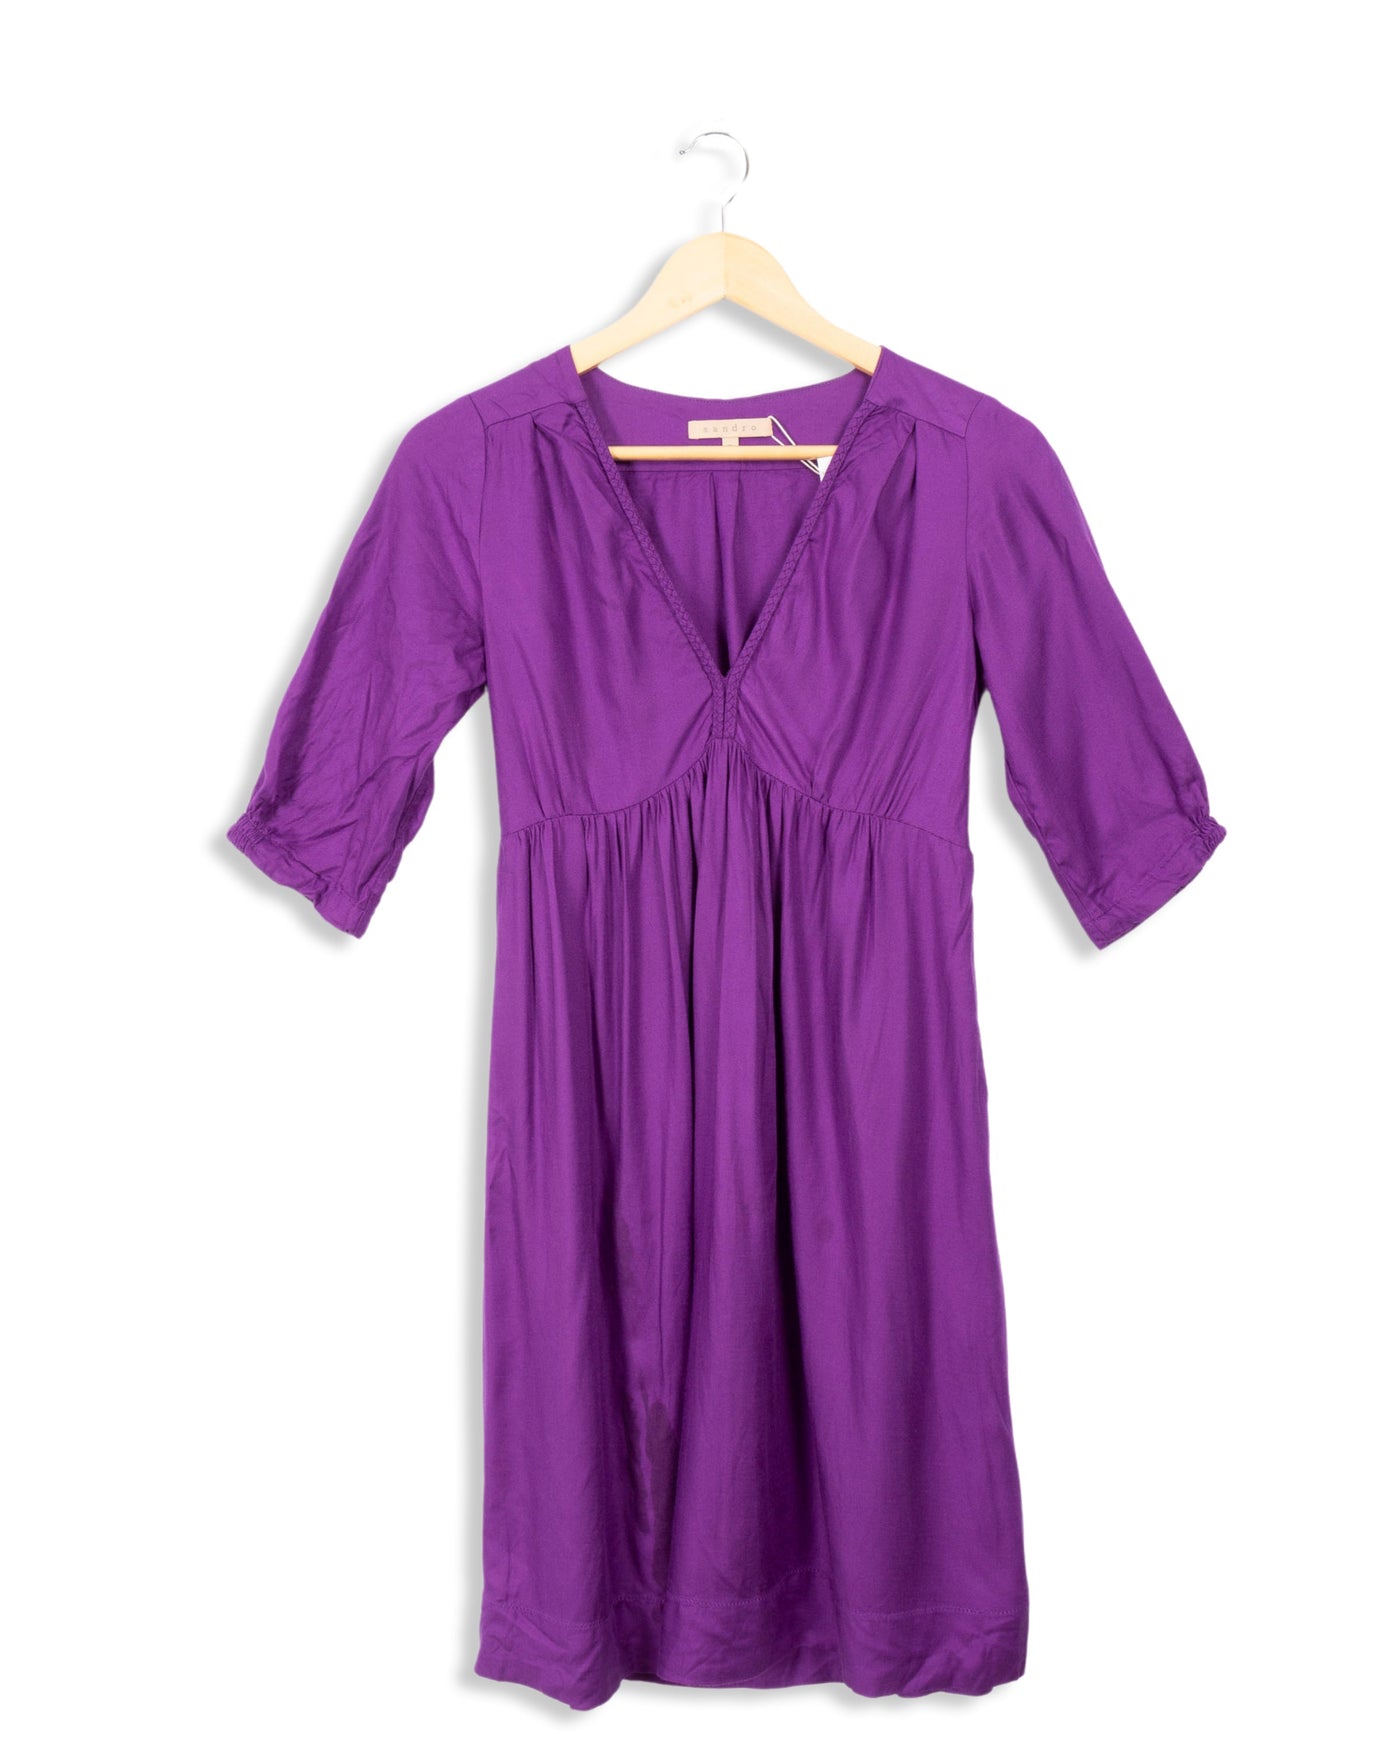 Robe courte violette - T2